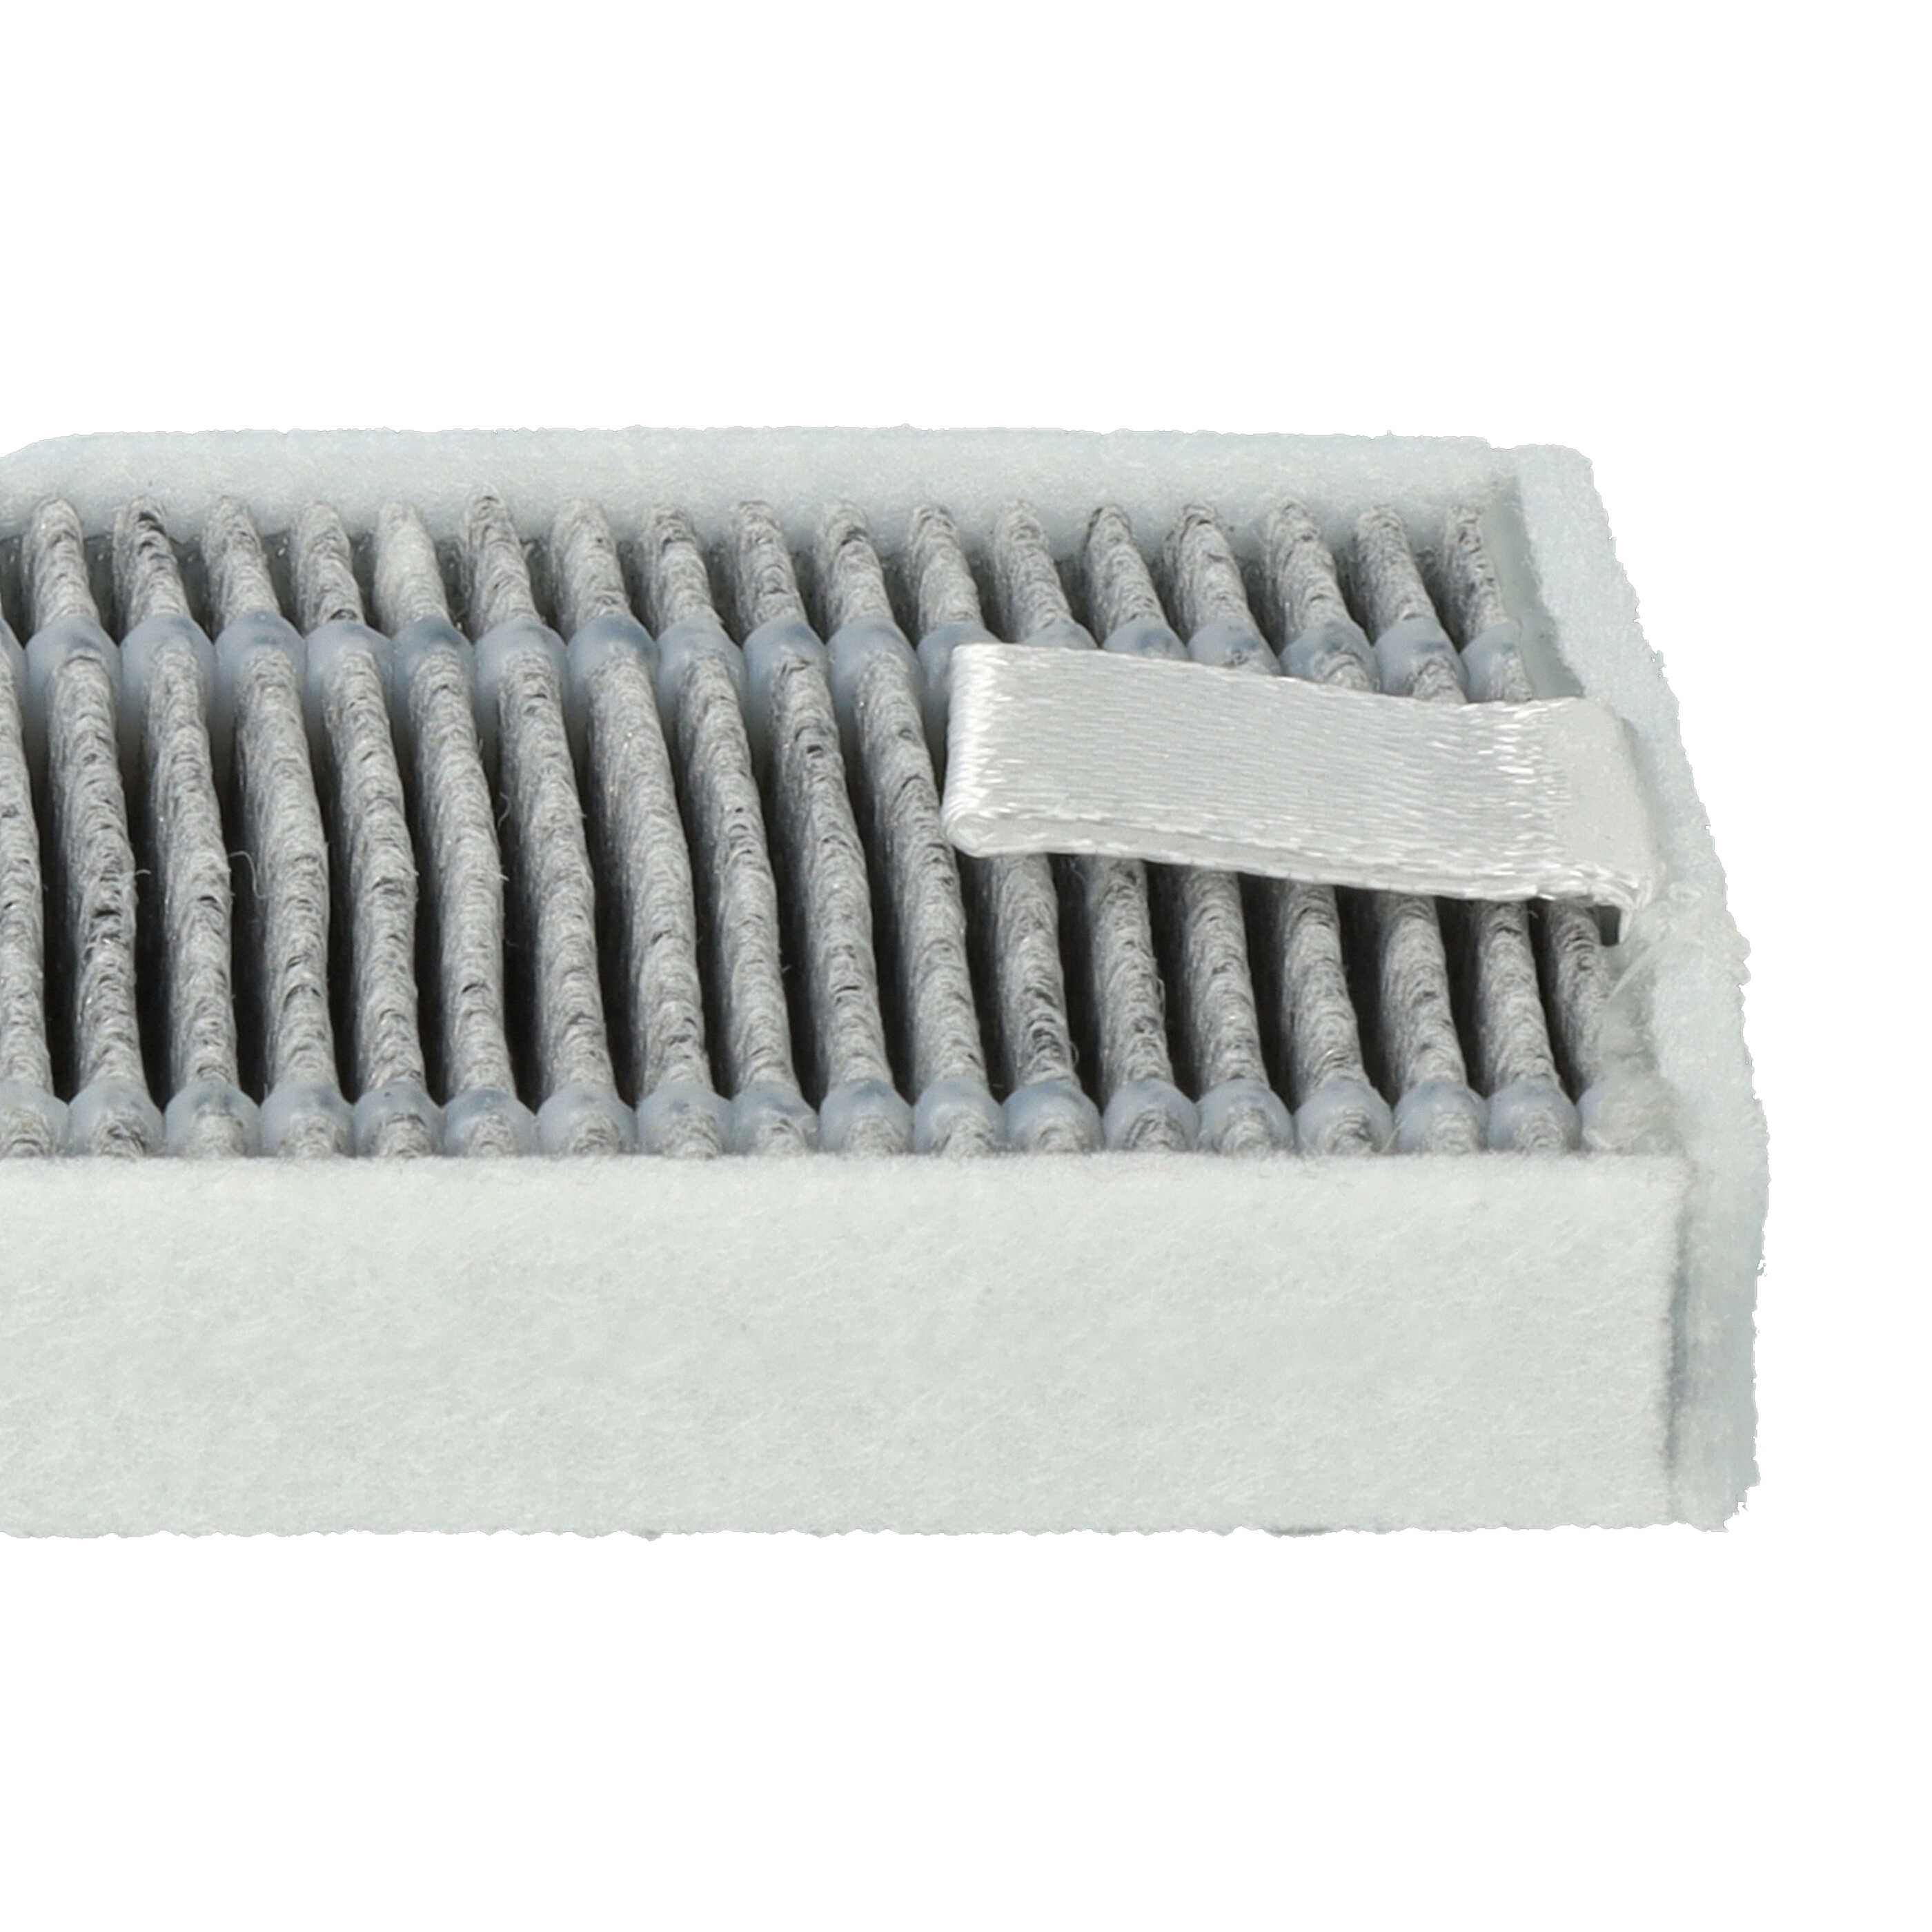 5x Filtres à charbon actif pour robot aspirateur Proscenic, Cecotec, Xiaomi M7 u.a. - 13 x 4 x 1 cm